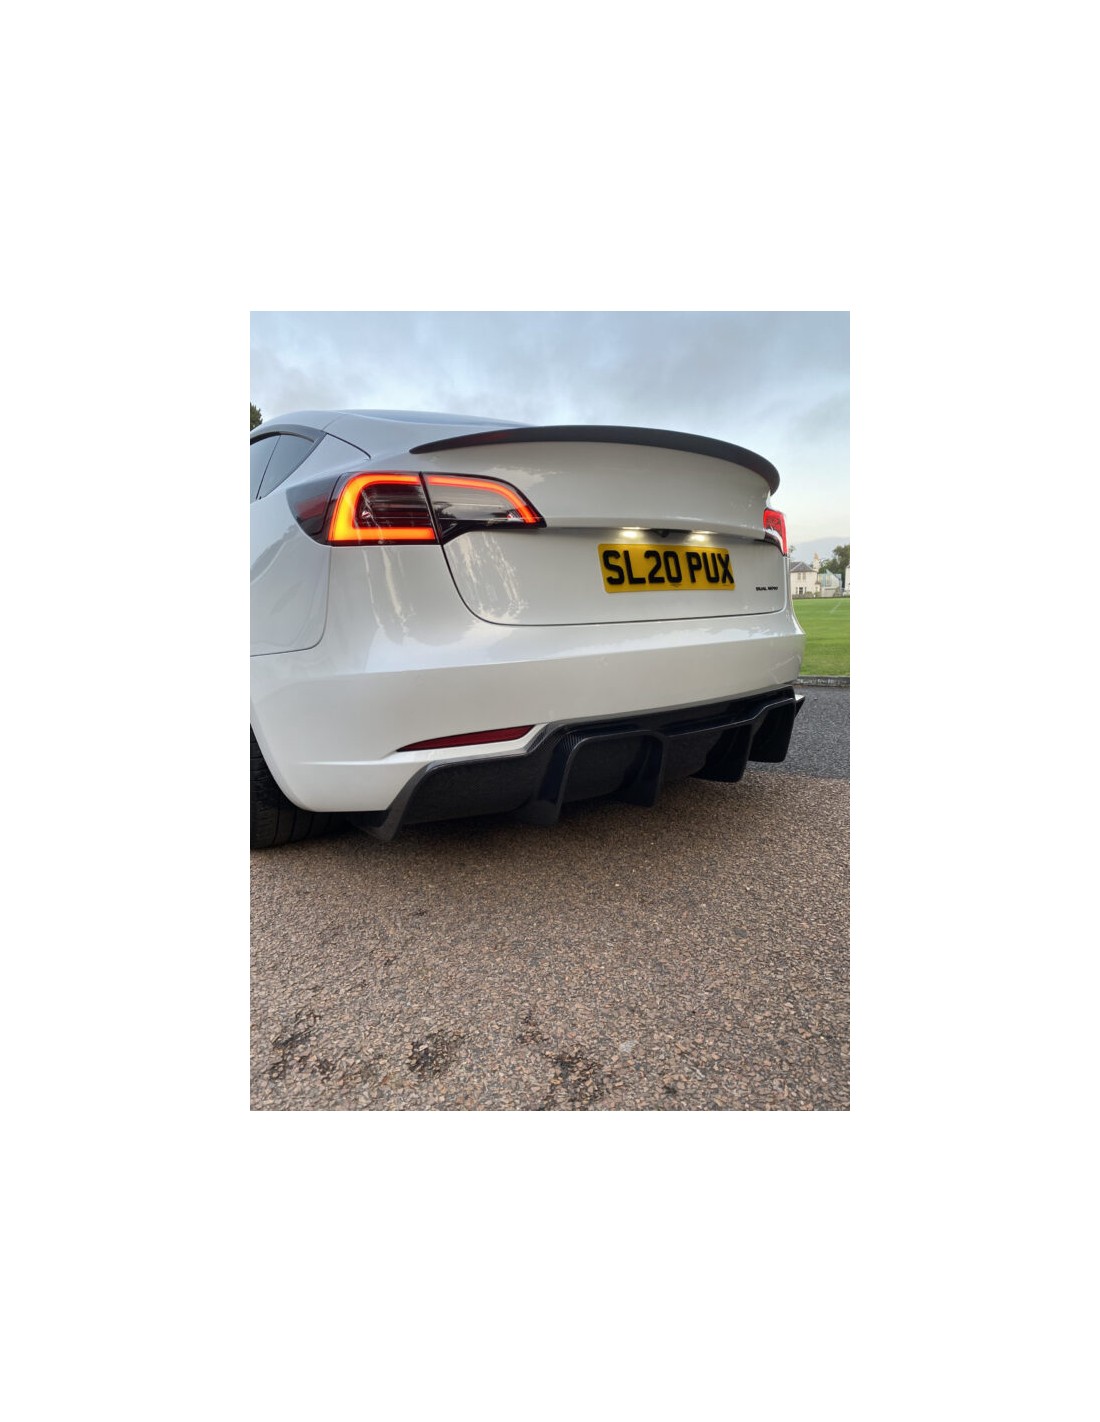 DOYELE Auto-Spezial-Lufterfrischer für Tesla Model 3 X S Y, UFO-Form-Duft- Diffusor-Duft-Dekor-Sitz-Aromatherapie,SIL-ver: : Auto & Motorrad